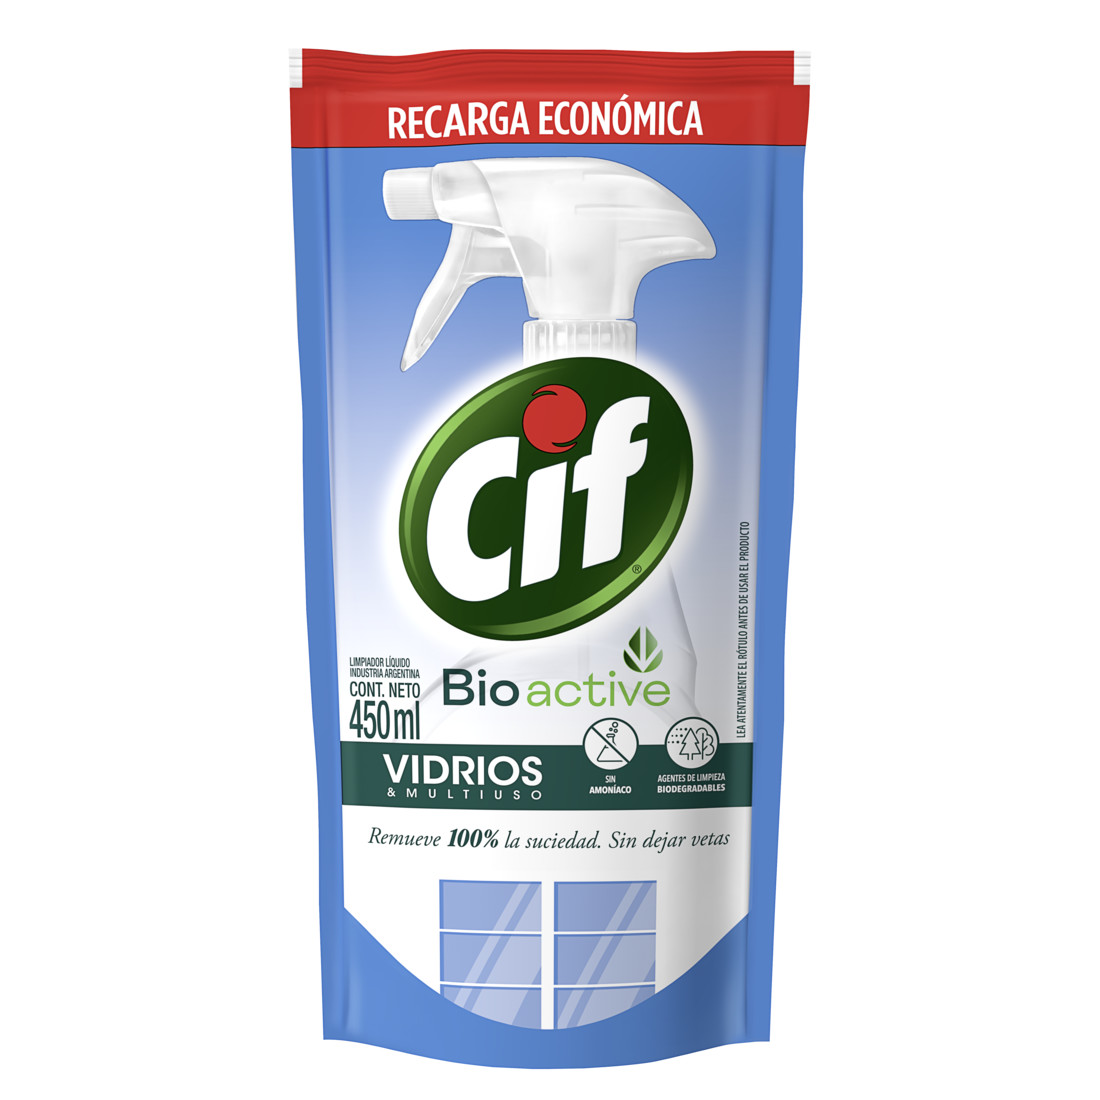 Cif Crema, el verdadero limpiador multiuso 💚 Probalo en todo tipo